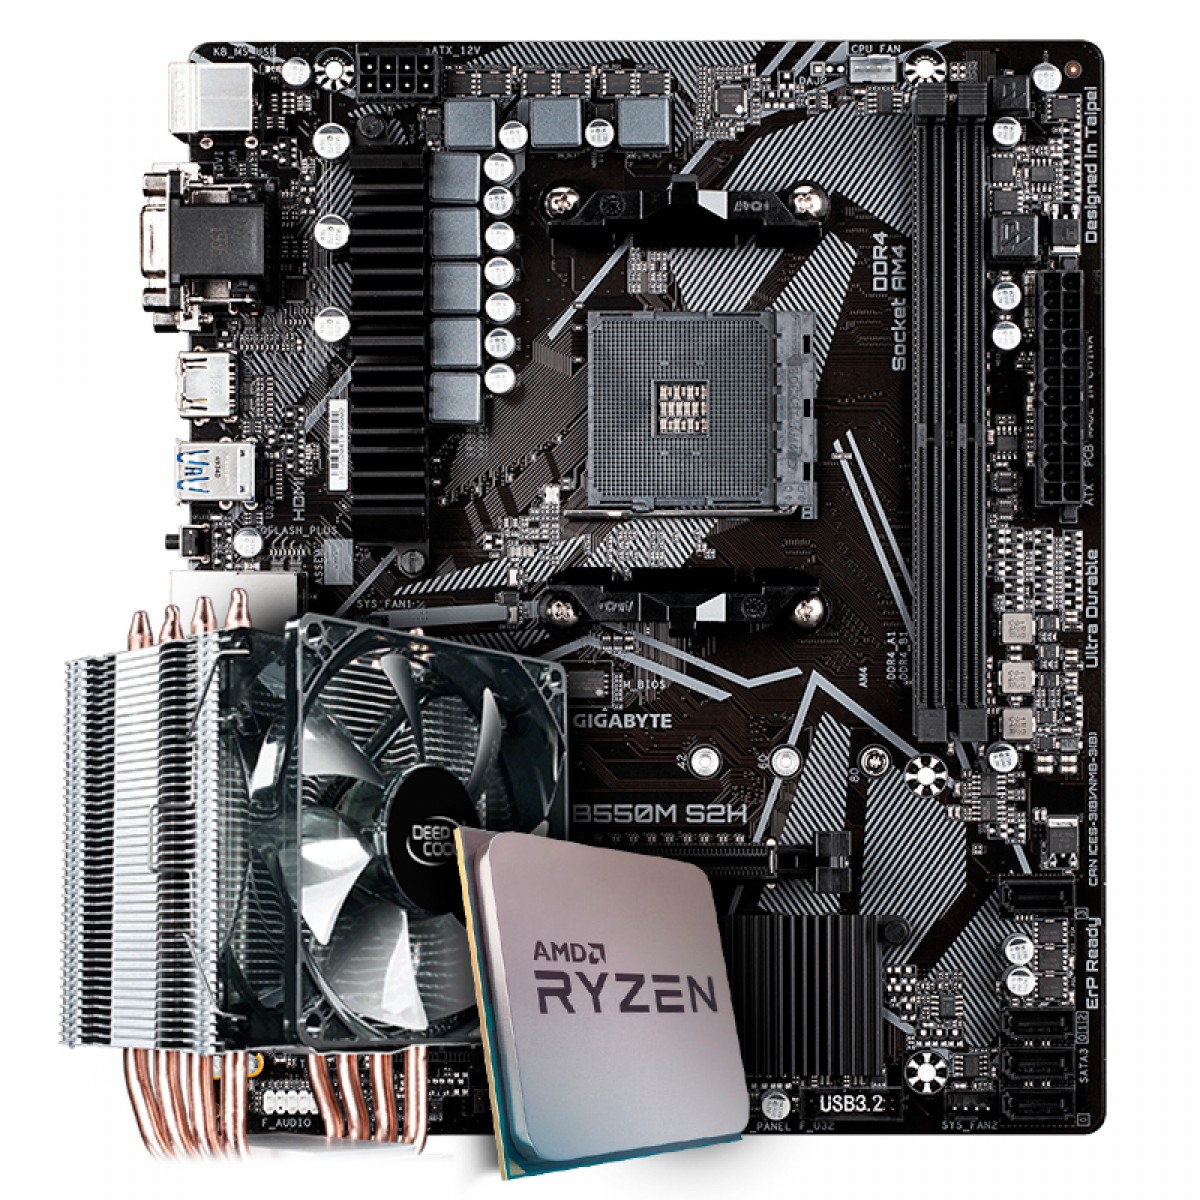 Kit Upgrade Placa Mãe Gigabyte B550M S2H, Chipset B550 AMD AM4 + Processador AMD Ryzen 9 3900x 3.8GHz + Cooler Deepcool Gammaxx